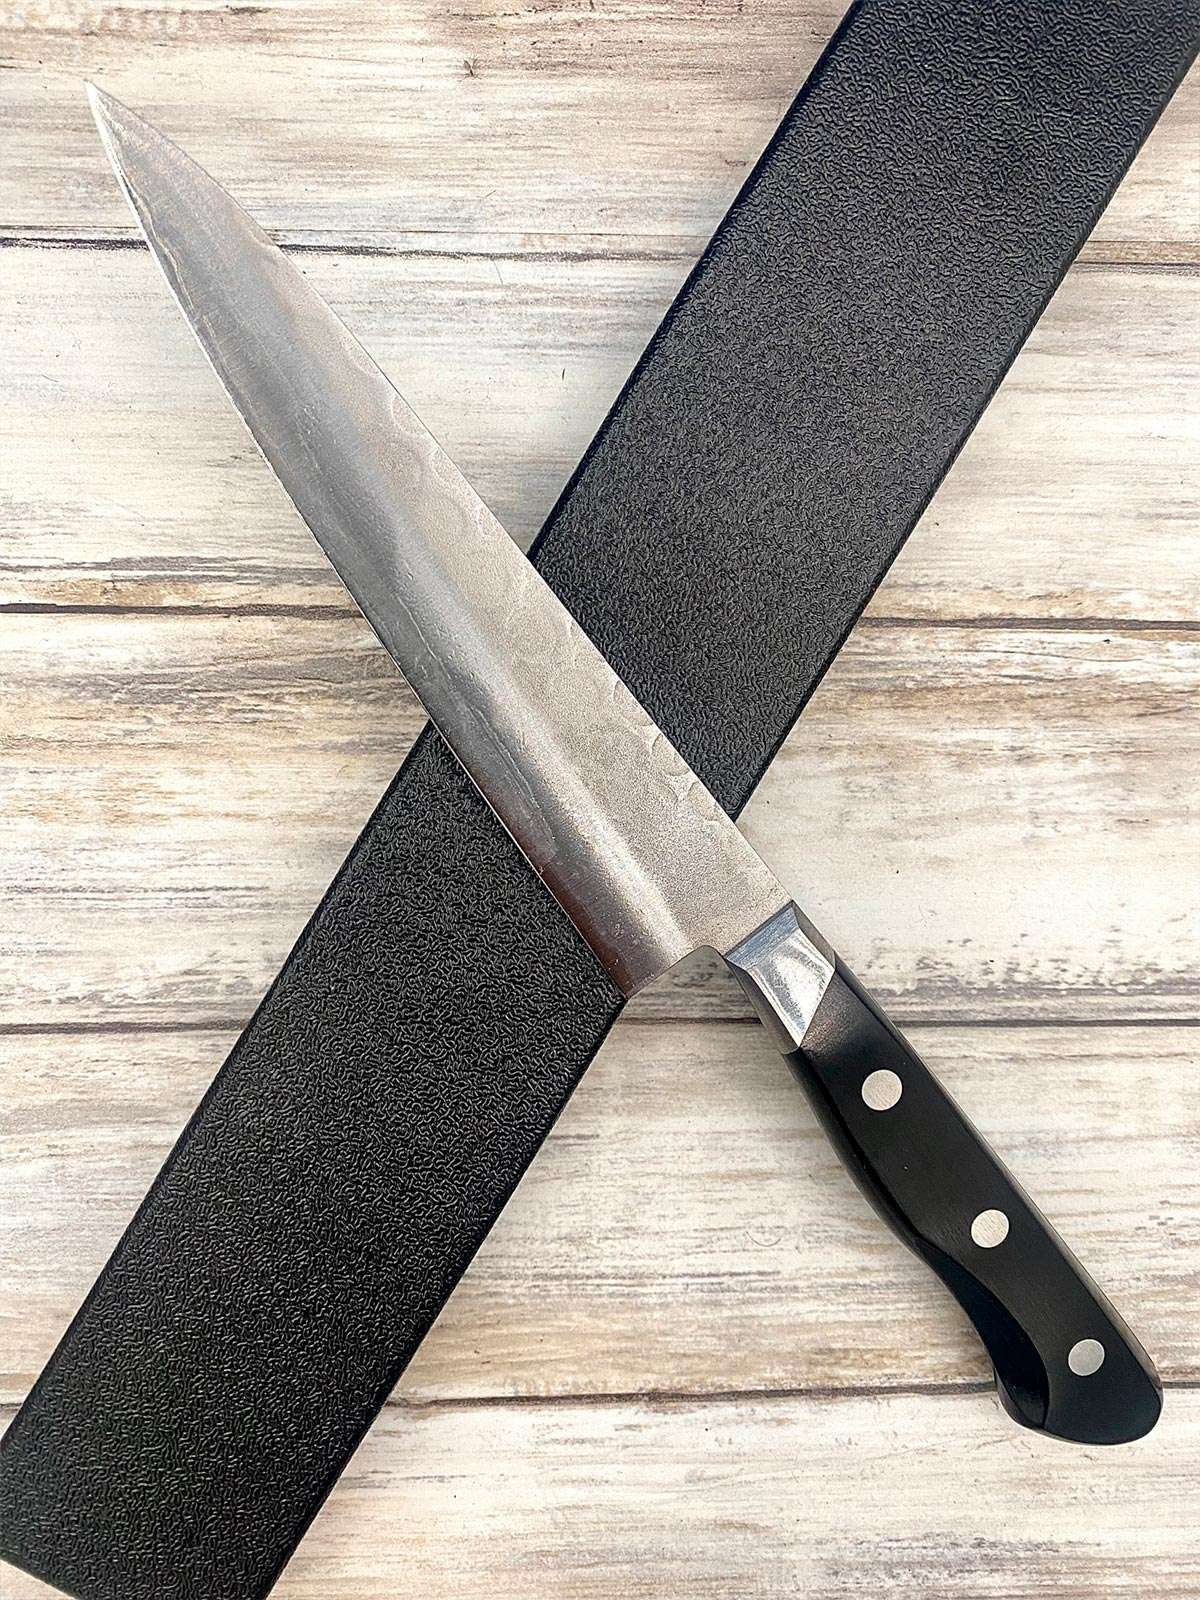 Acheter un Couteau Japonais artisanal Petty aogami 13,5 cm Tsuchime Nashiji à Paris meilleur vente de couteaux de cuisine nippon grande marque de qualité